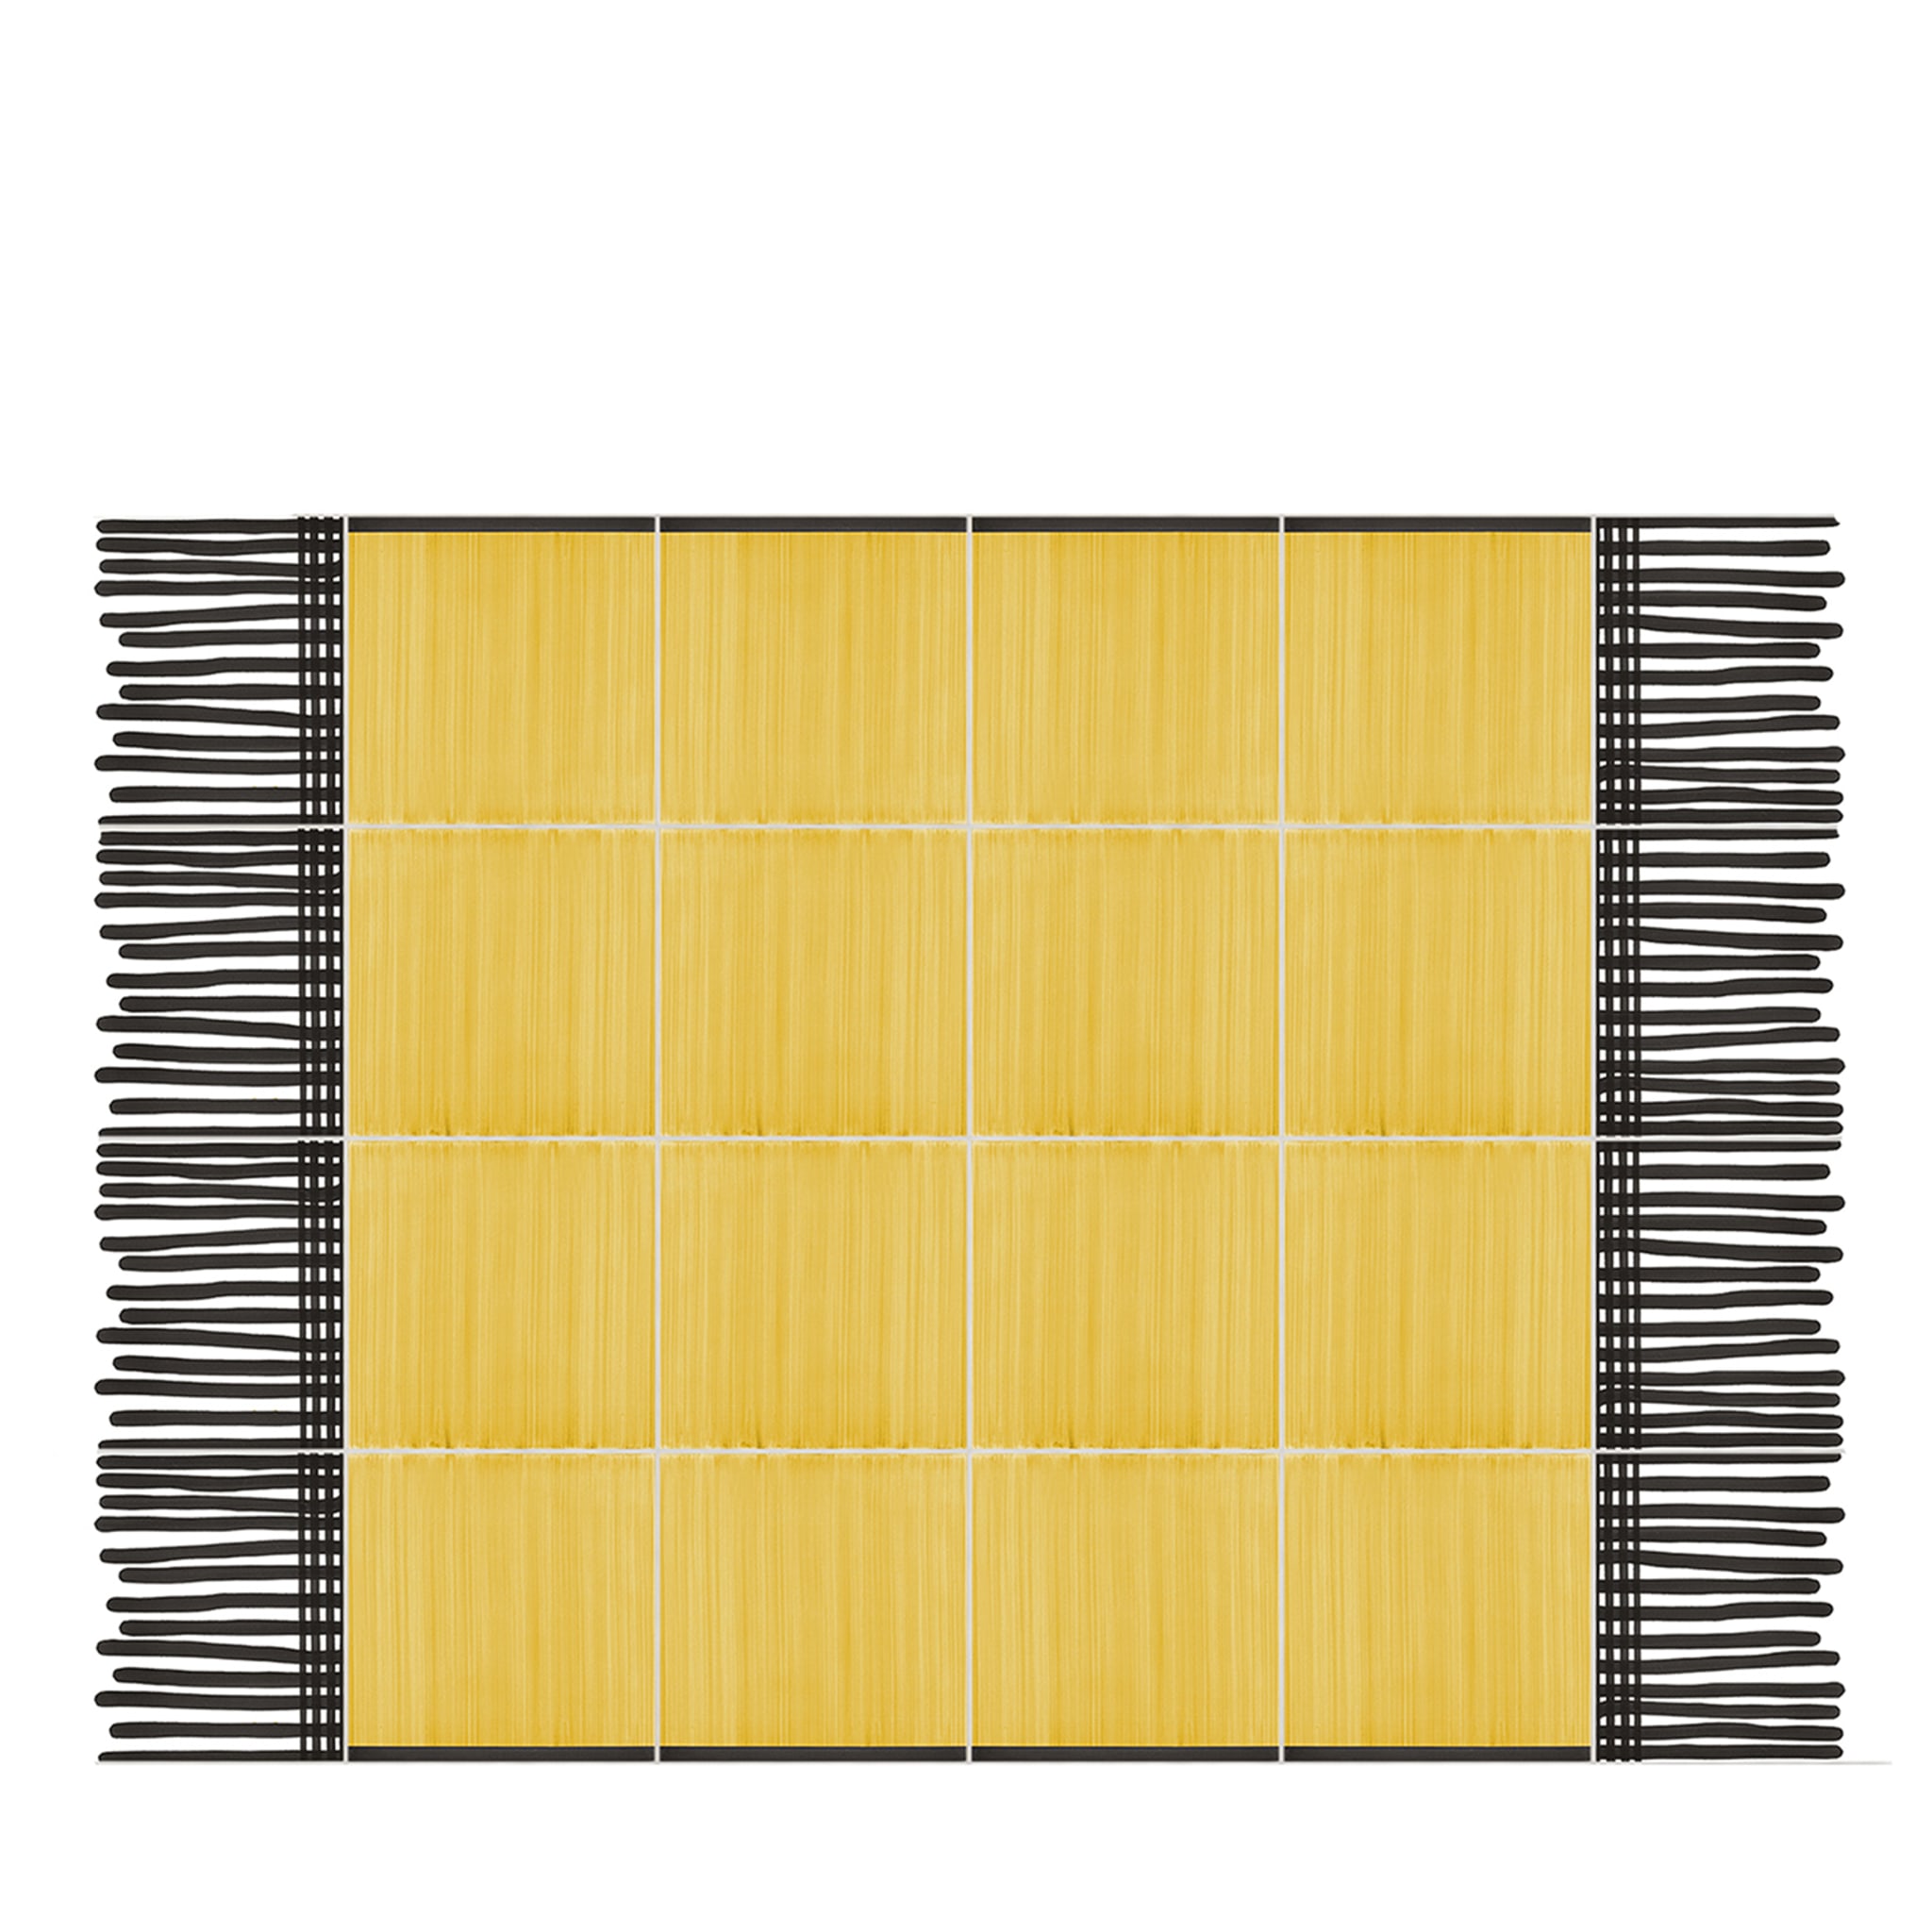 Tappeto Composizione ceramica giallo totale di Giuliano Andrea dell'Uva 120 X 80 con bordo nero - Vista principale